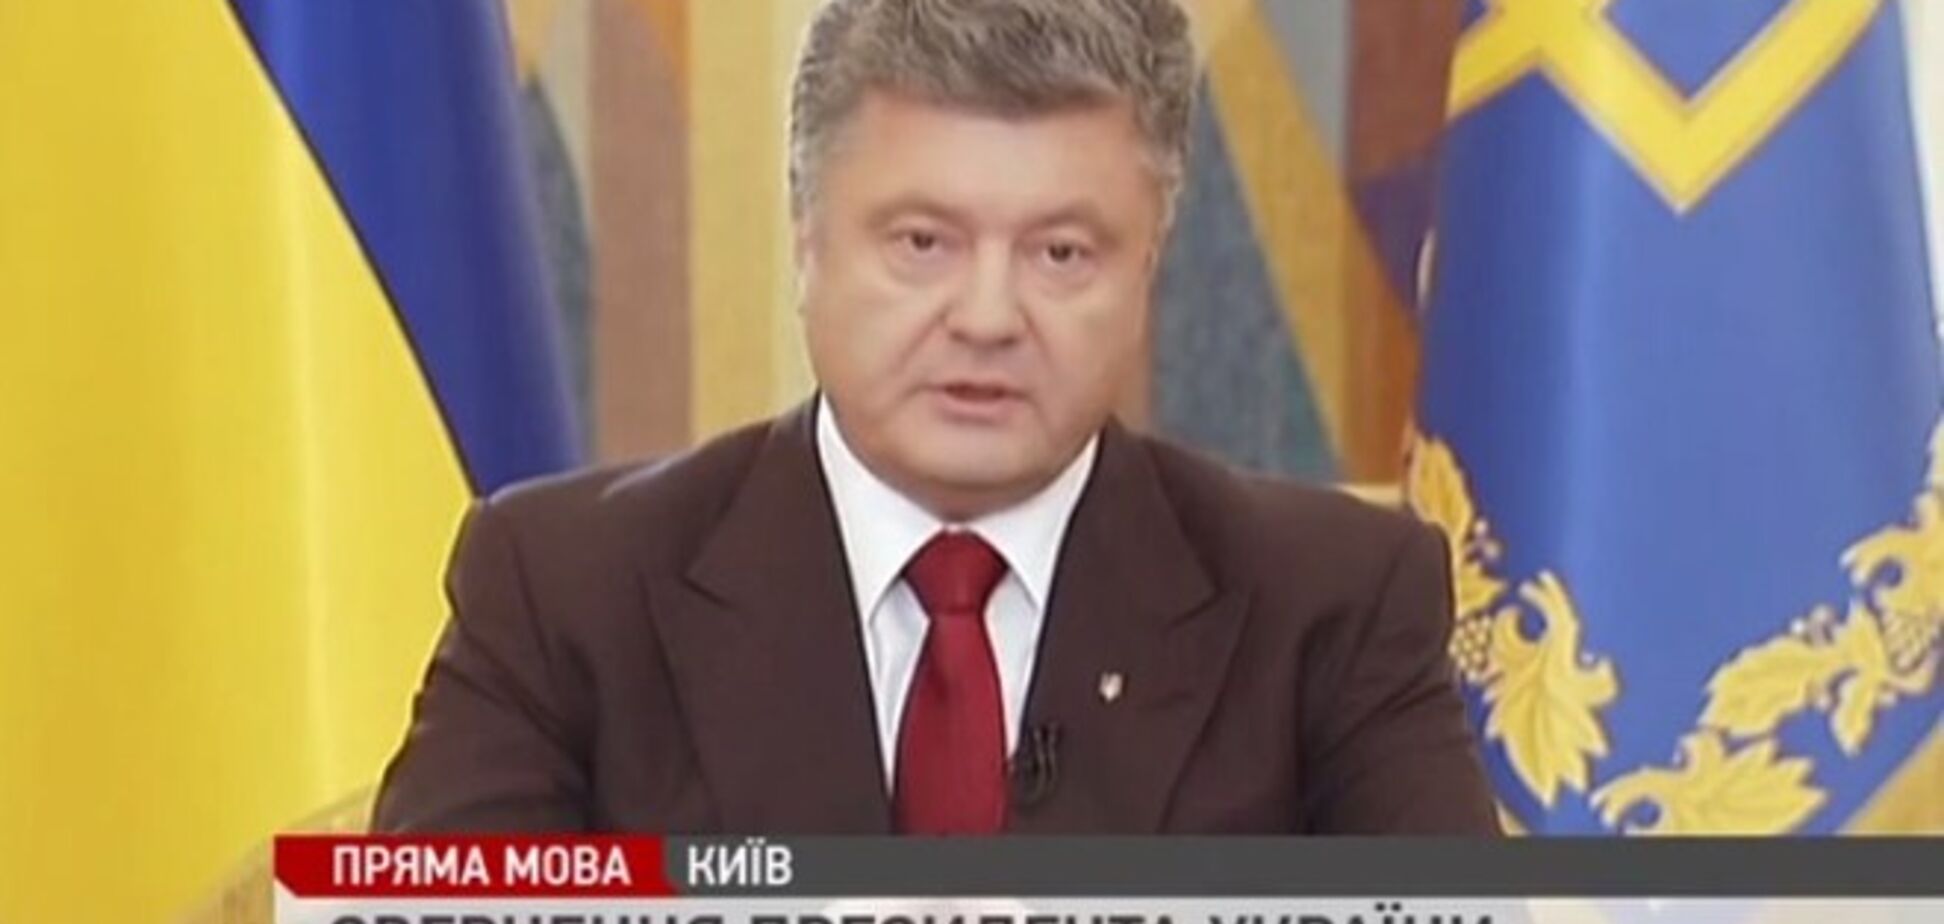 Порошенко сообщил детали мирного плана на востоке Украины. Обращение Президента